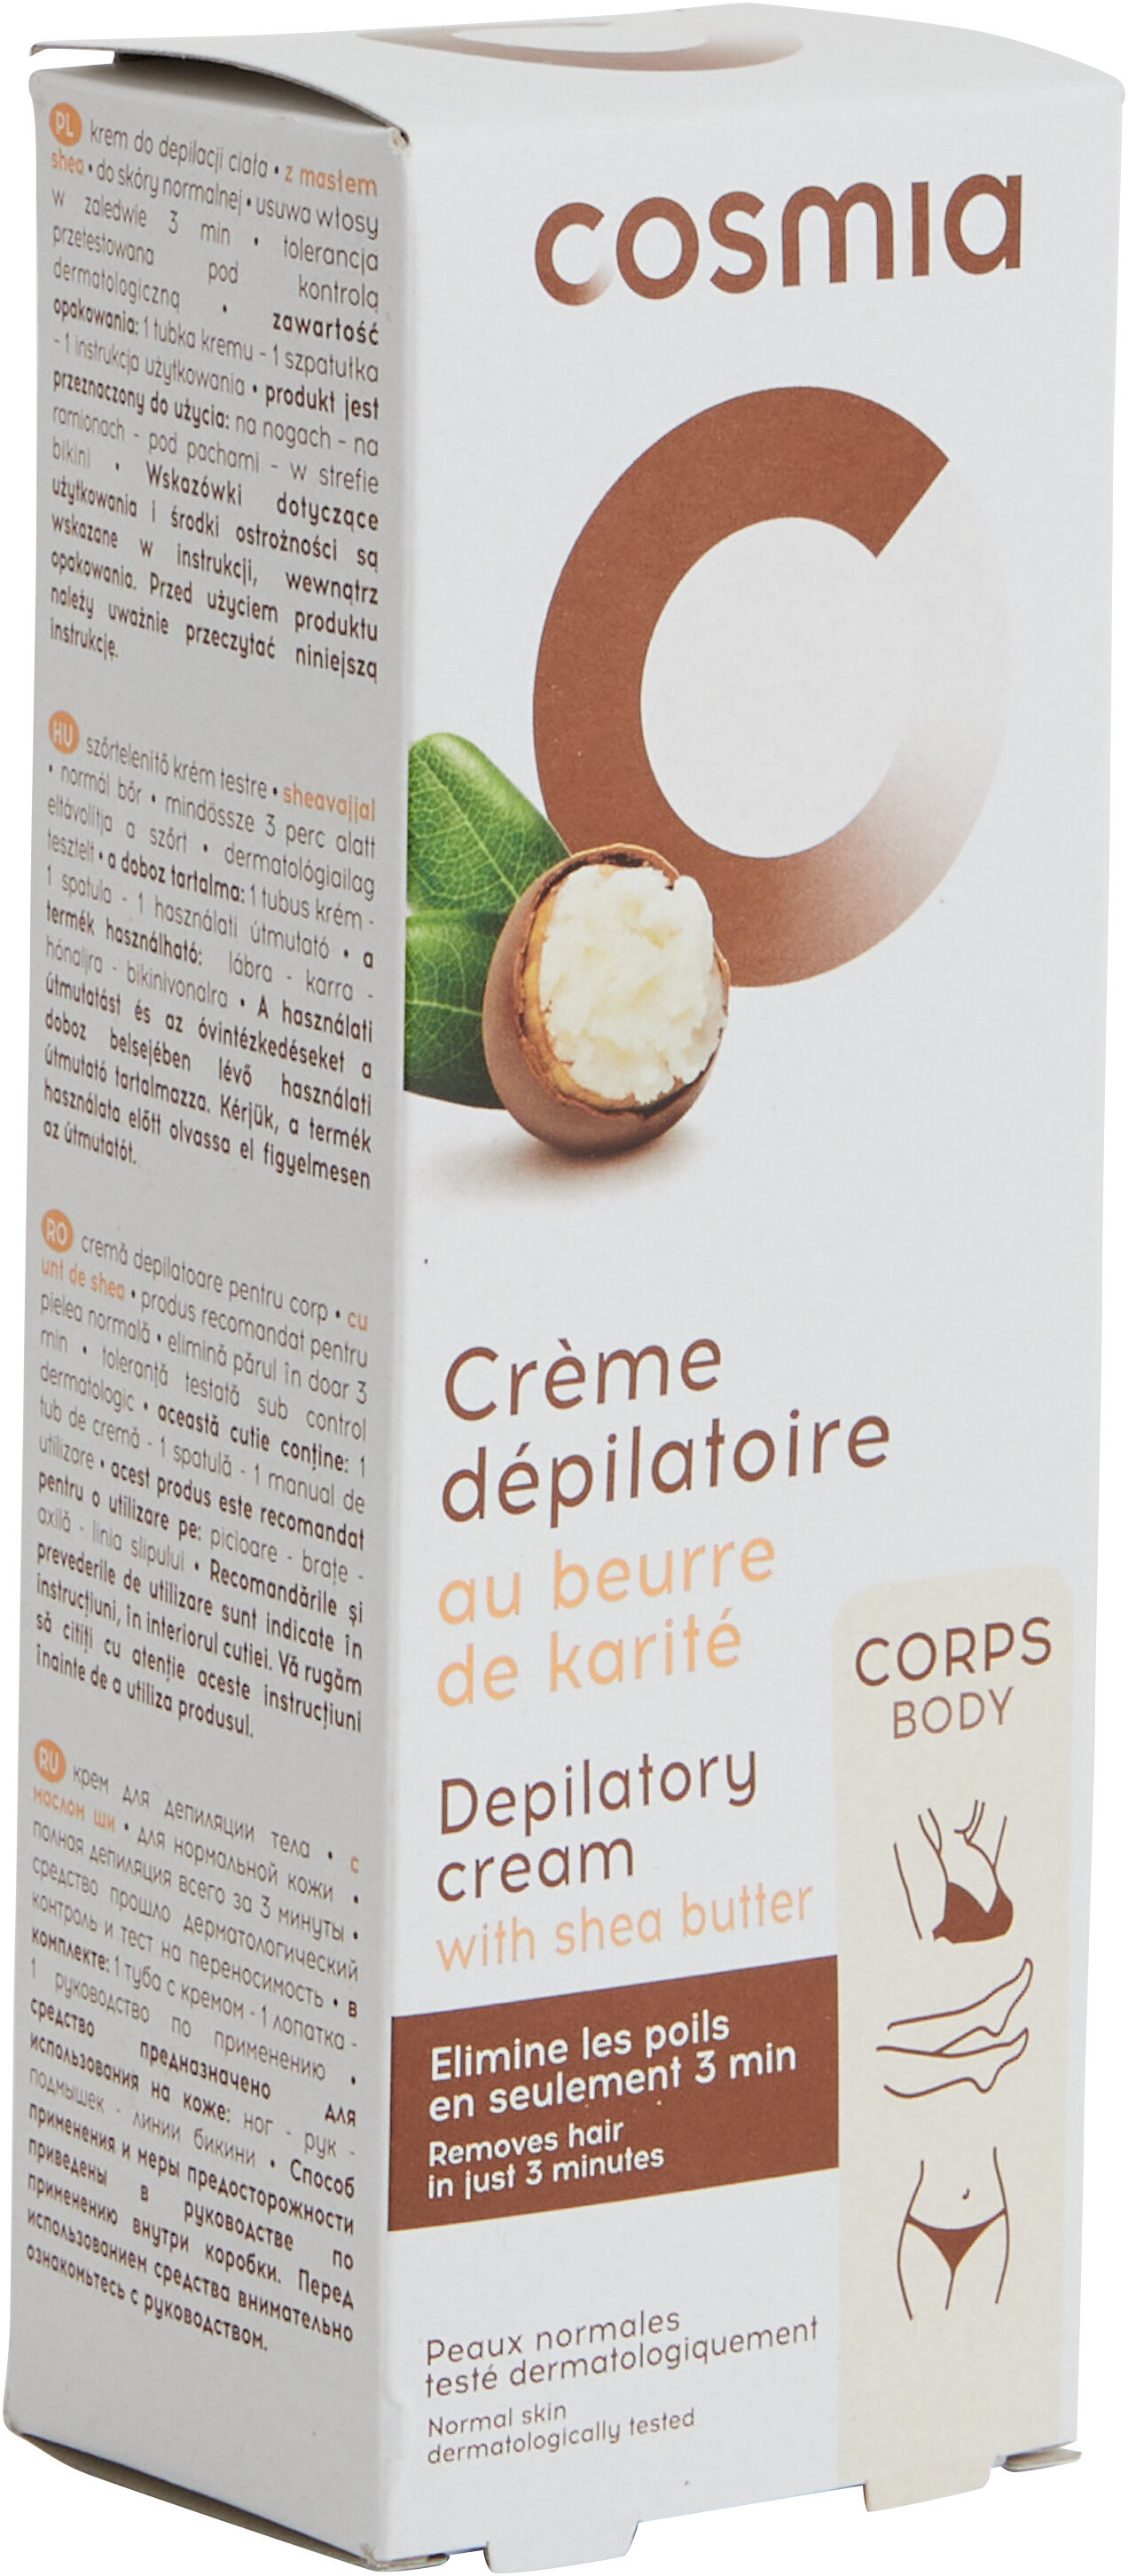 Crème dépilatoire au beurre de karité - 製品 - fr